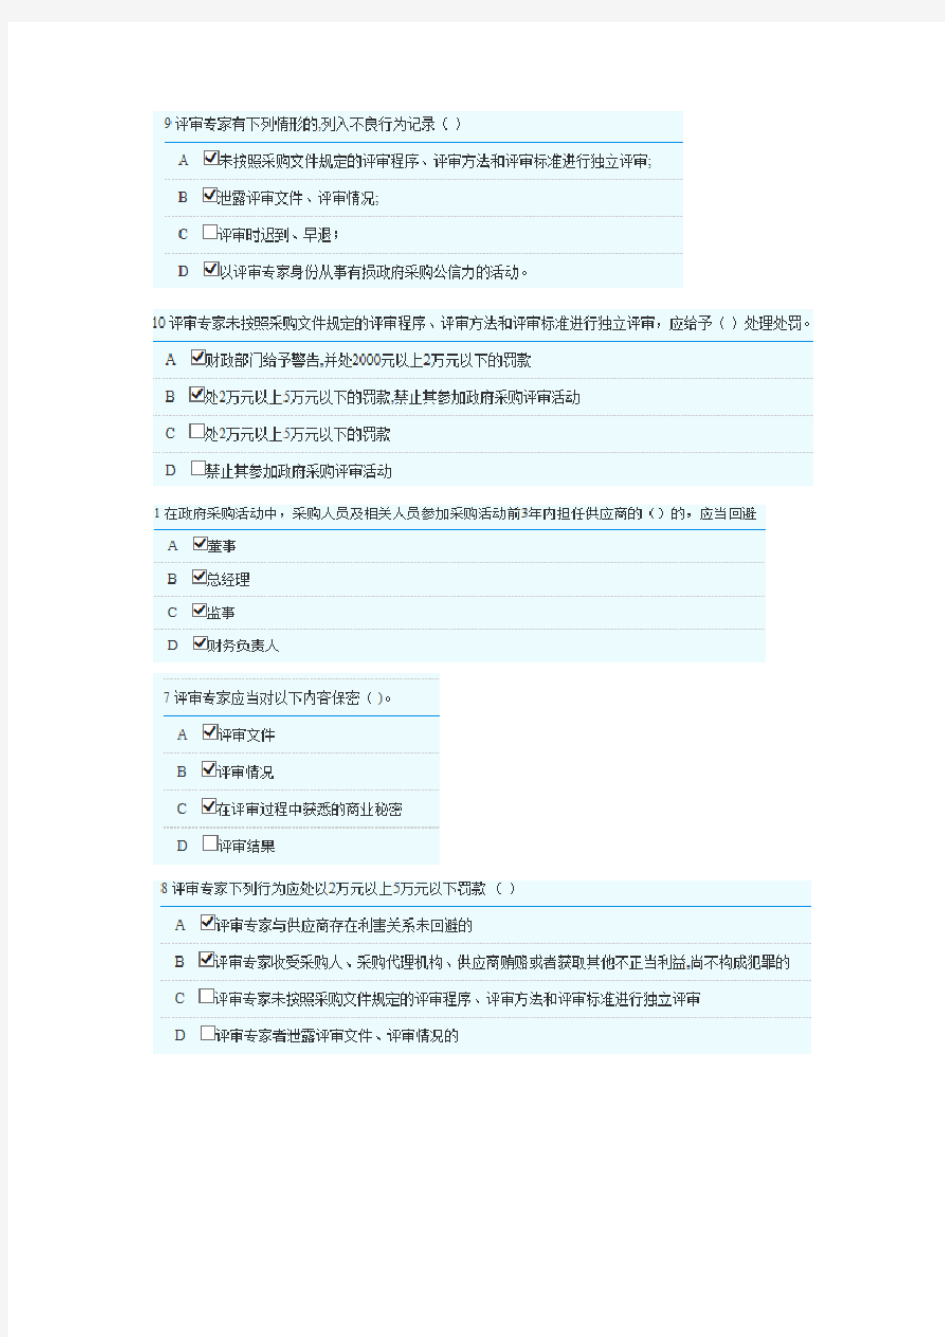 2018年湖南省政府采购评审专家库培训测评-多选题部分答案